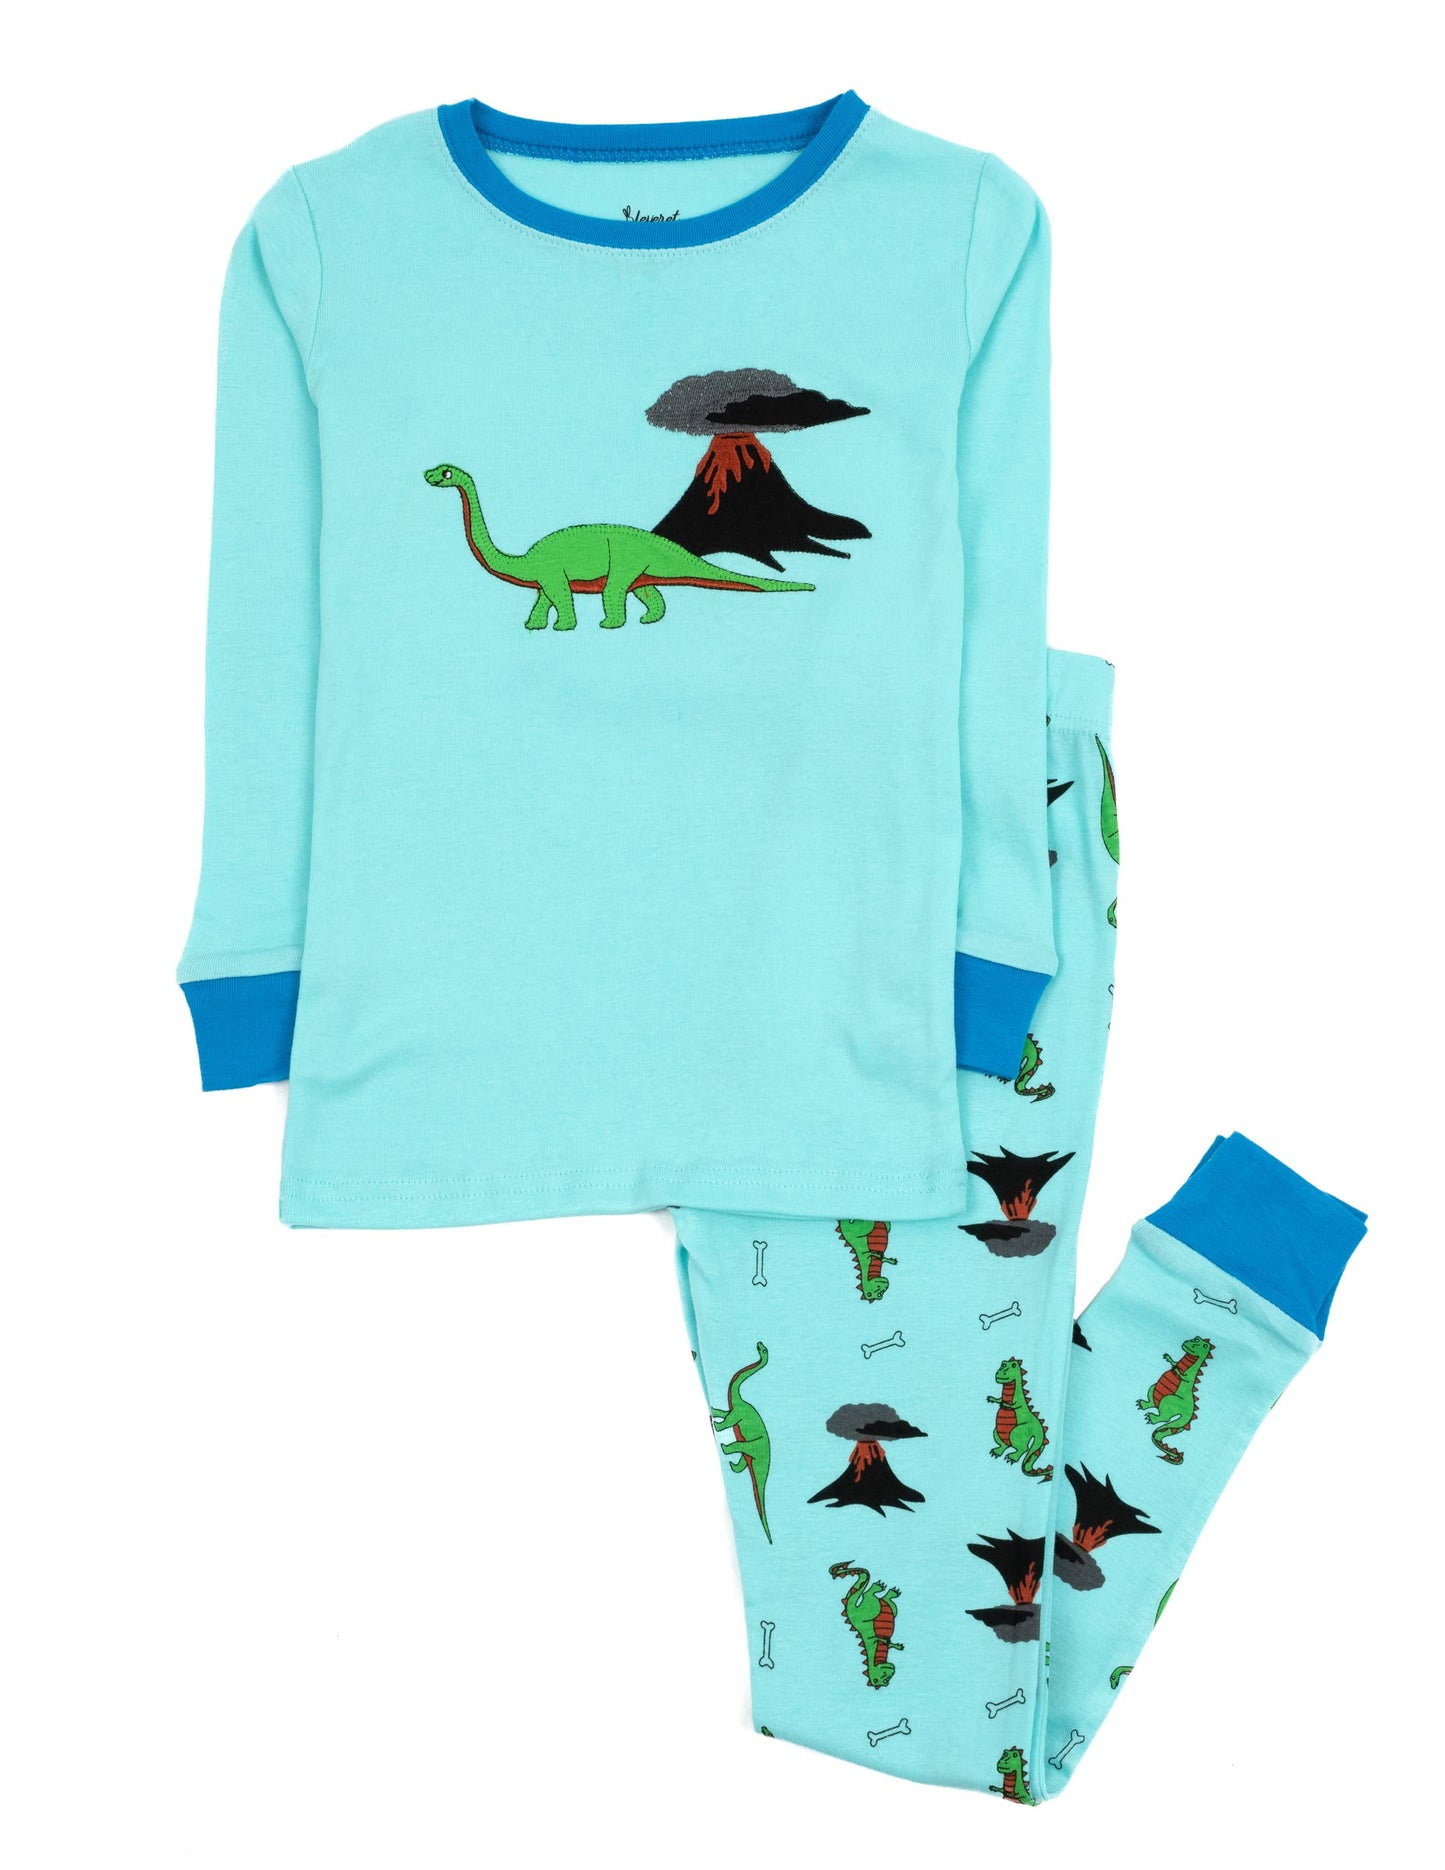 Kids Two Piece Cotton Pajamas - Dino Print